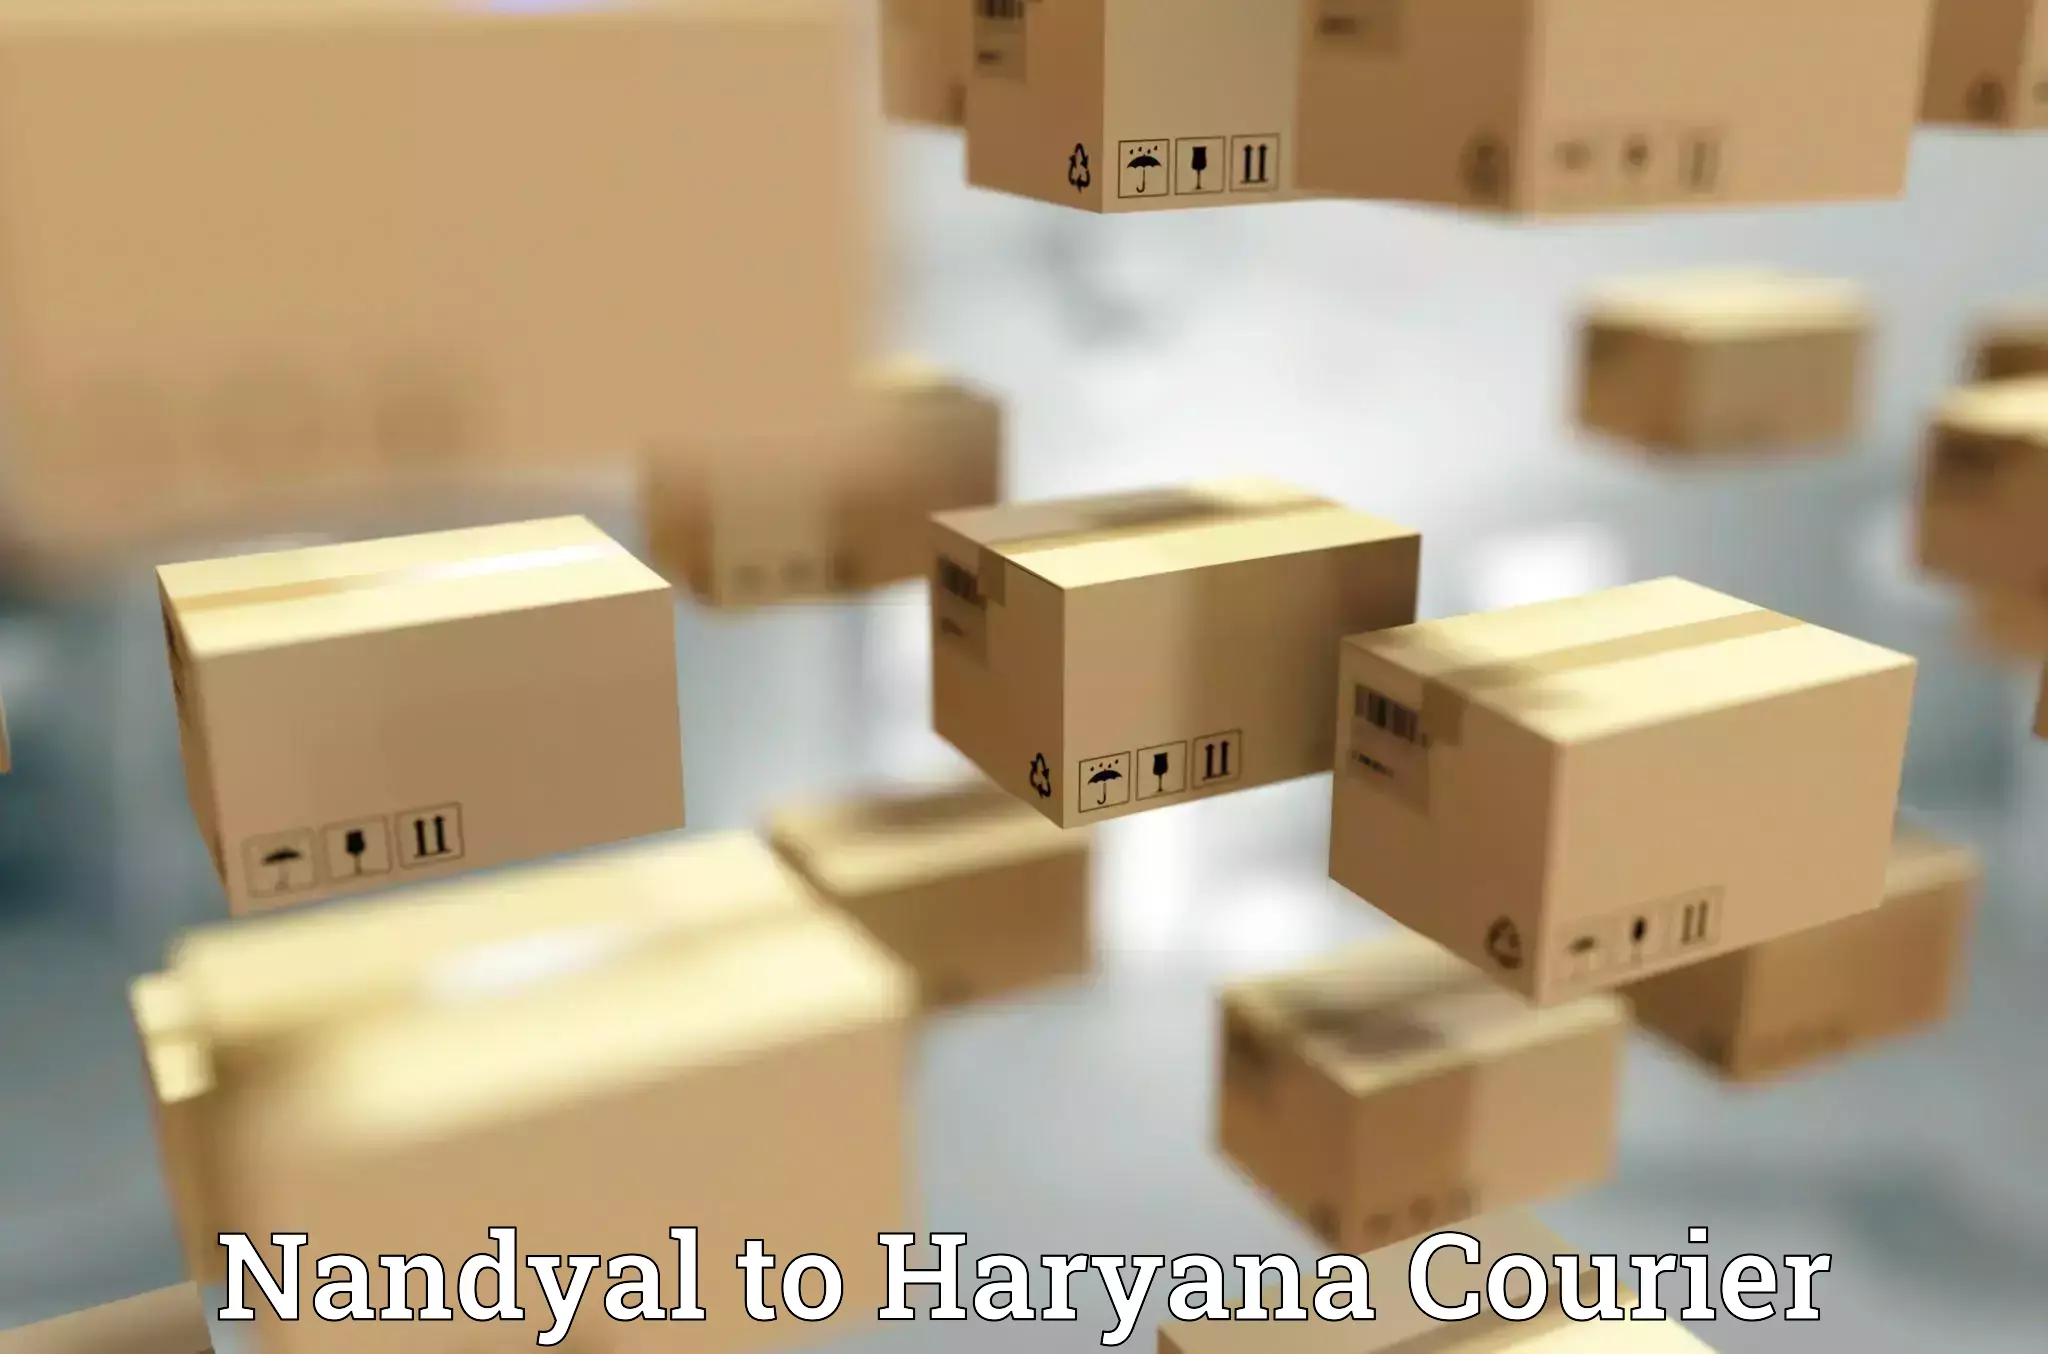 Express mail service Nandyal to Haryana